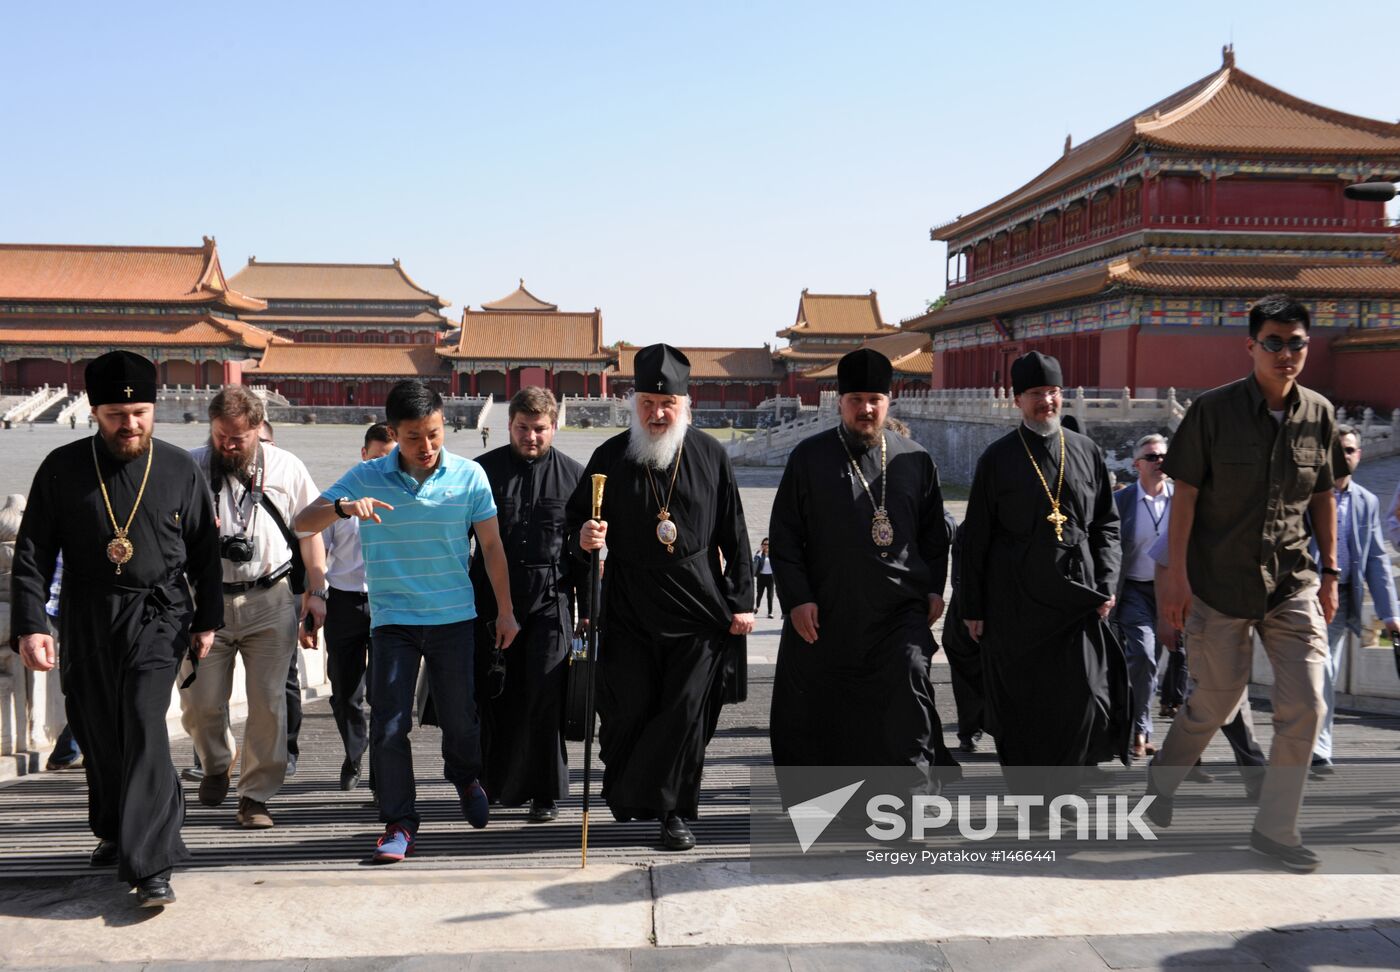 Patriarch Kirill visits Great Chinese Wall